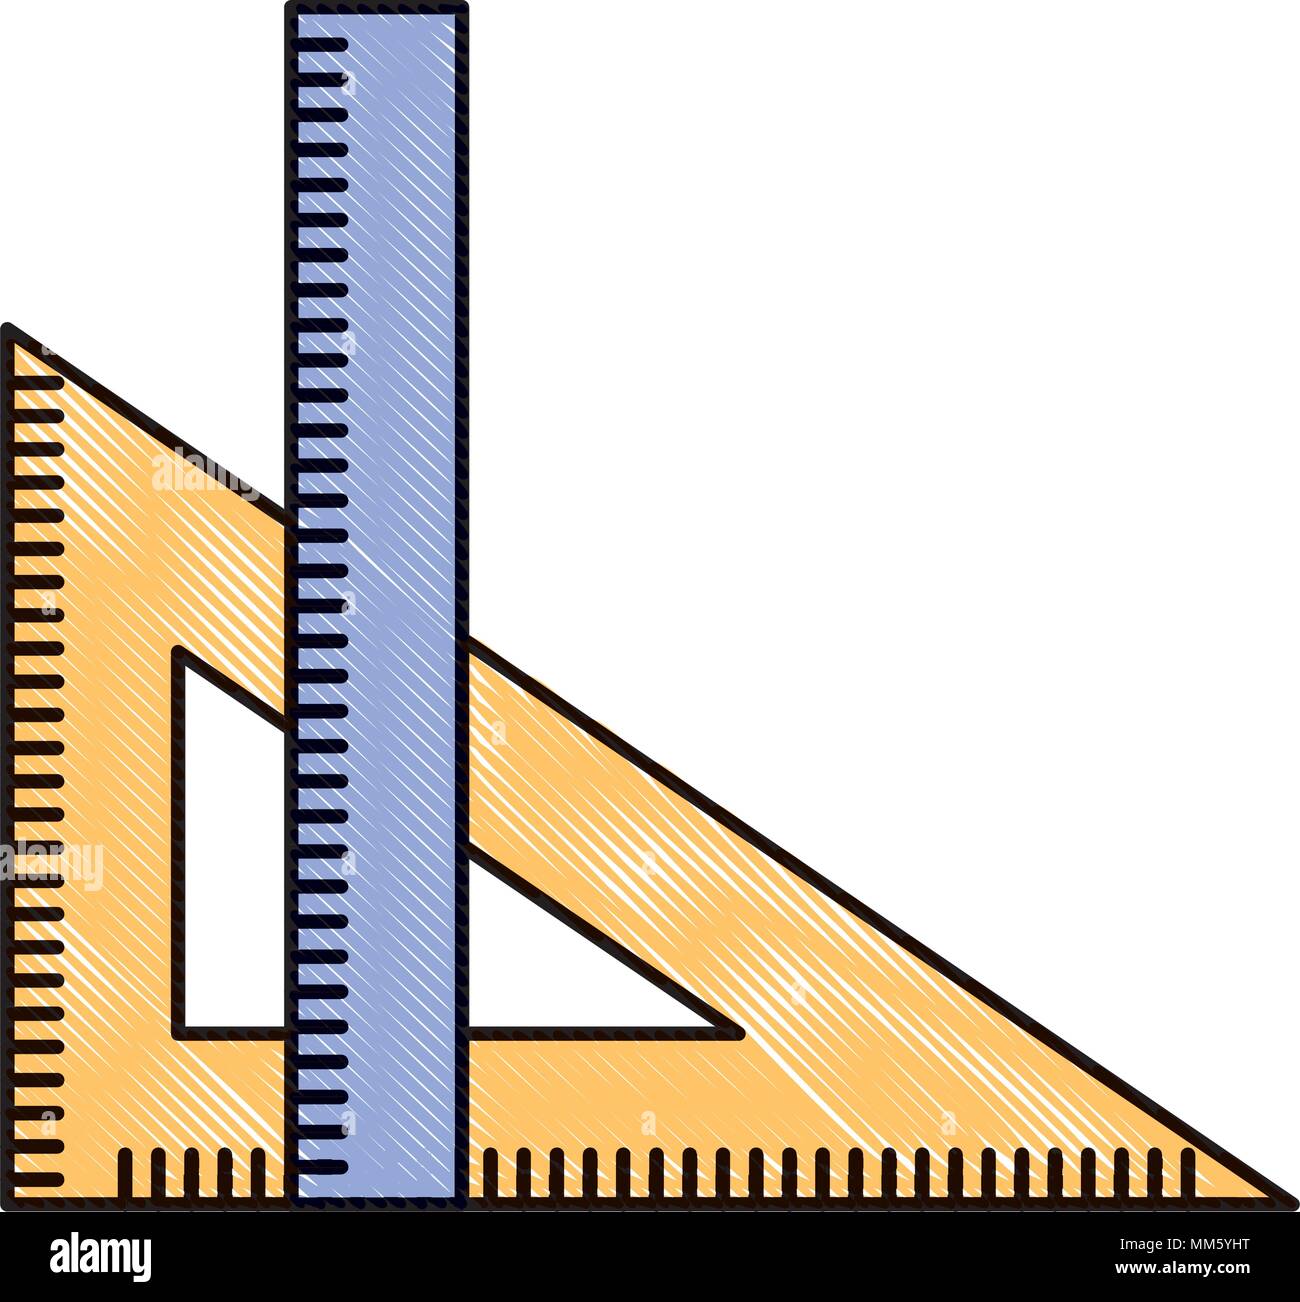 Règle et équerre objet géométrique dessin illustration vectorielle Image  Vectorielle Stock - Alamy